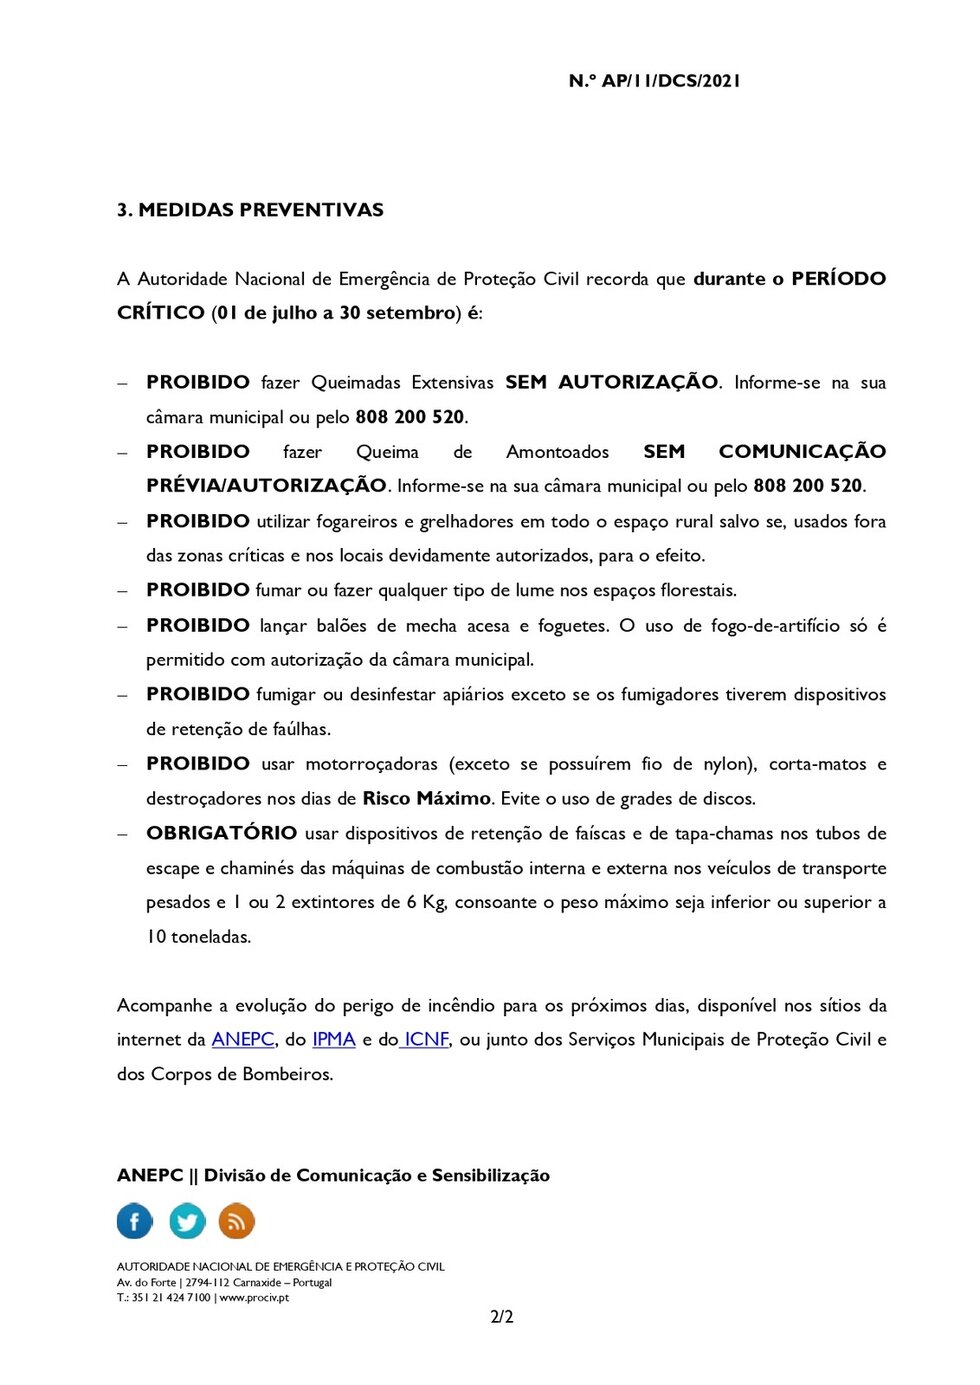 AVISO À POPULAÇÃO _ PERIGO DE INCÊNDIO _ MEDIDAS PREVENTIVAS _ 09 JULHO2021 (1)_page-0002